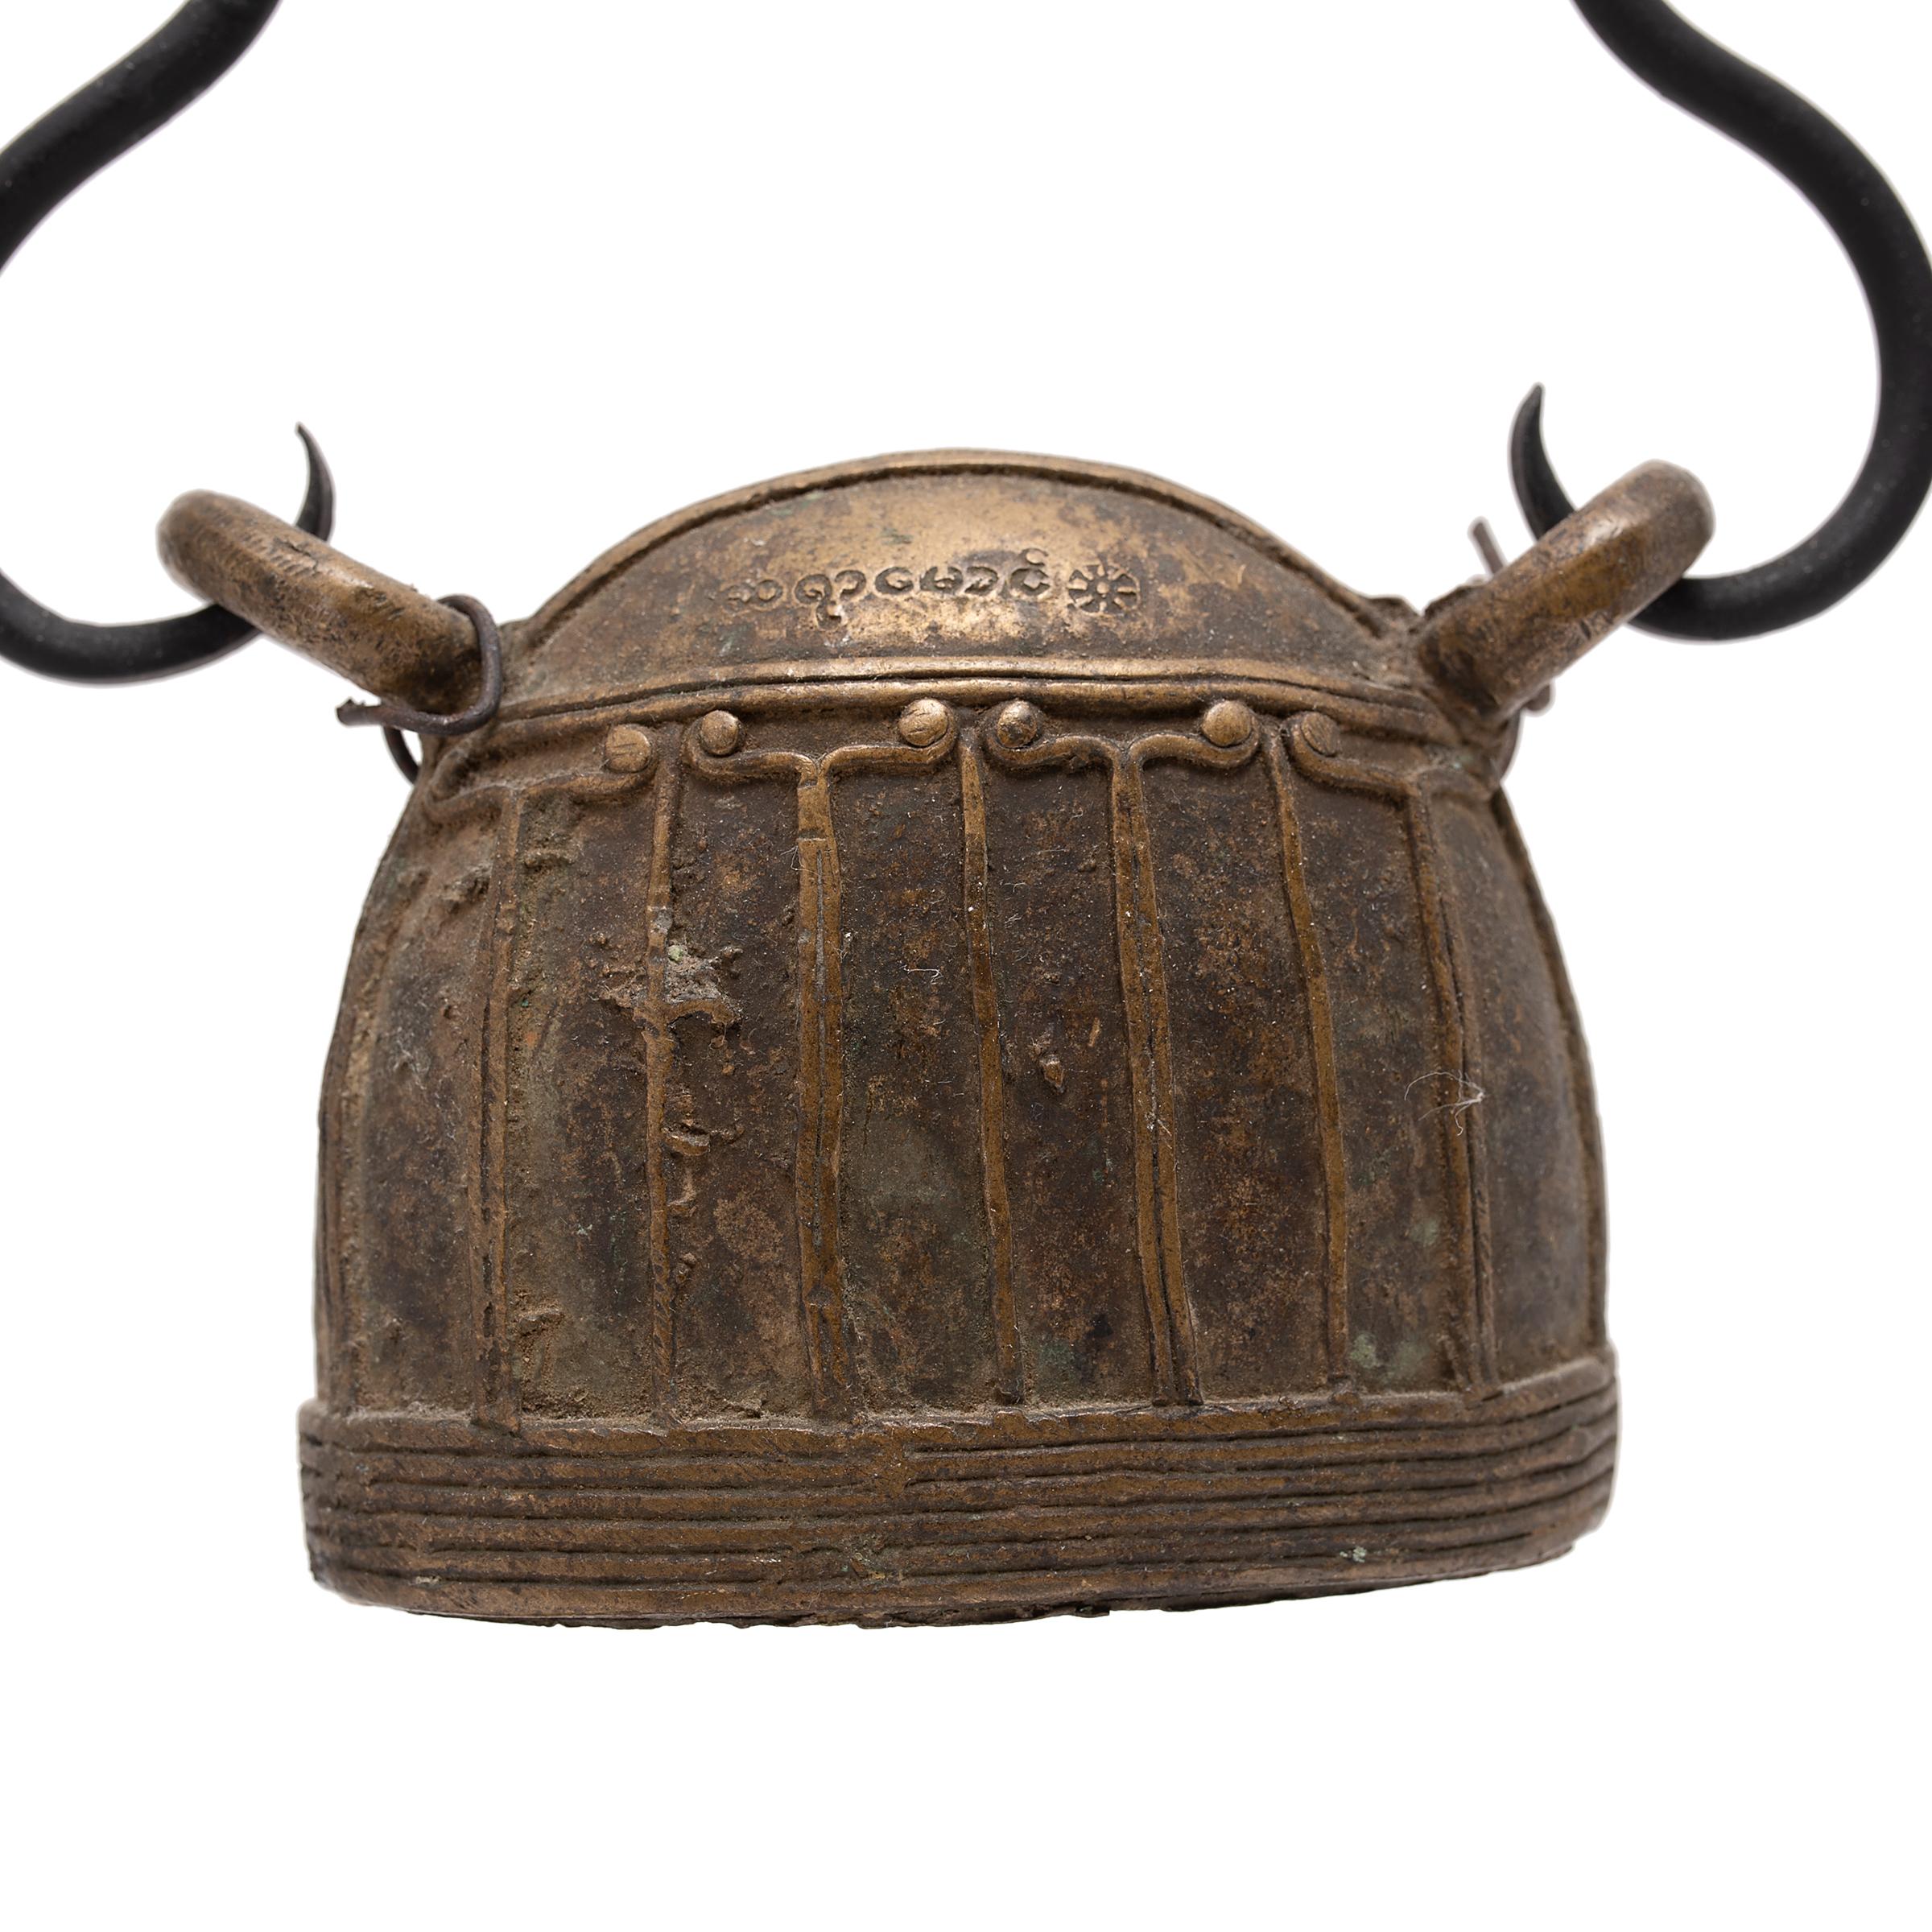 Cette grande cloche birmane, connue sous le nom de hka-lauk, était utilisée pour suivre le déplacement d'un animal d'élevage. Elle était suspendue à un collier par les deux boucles situées au sommet. Datée du XIXe siècle, la cloche a été coulée en